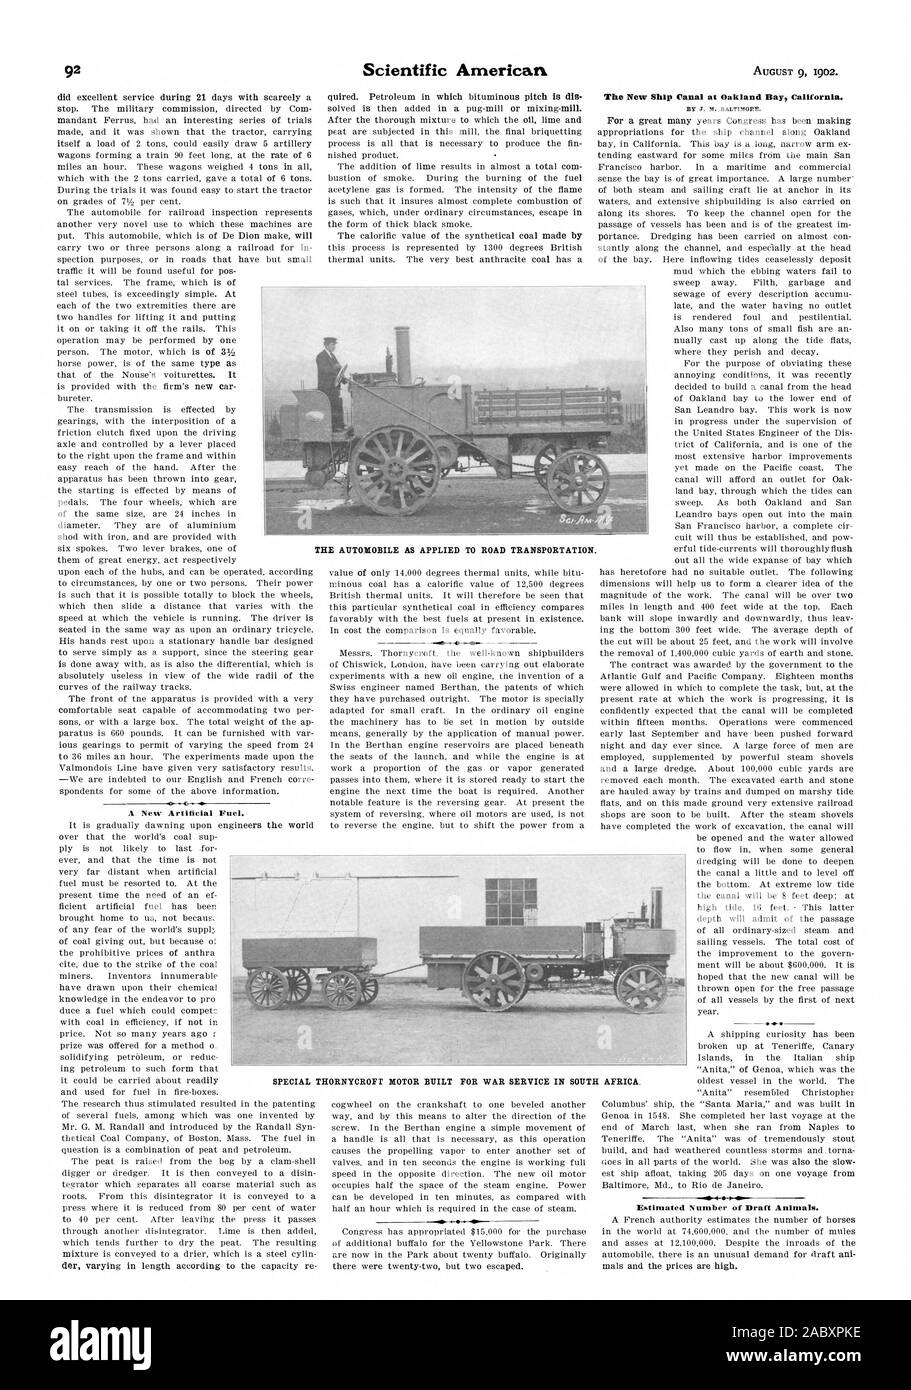 Un nuovo combustibile artificiale. La nuova nave Canal a Oakland Bay California., Scientific American, 1902-08-09 Foto Stock